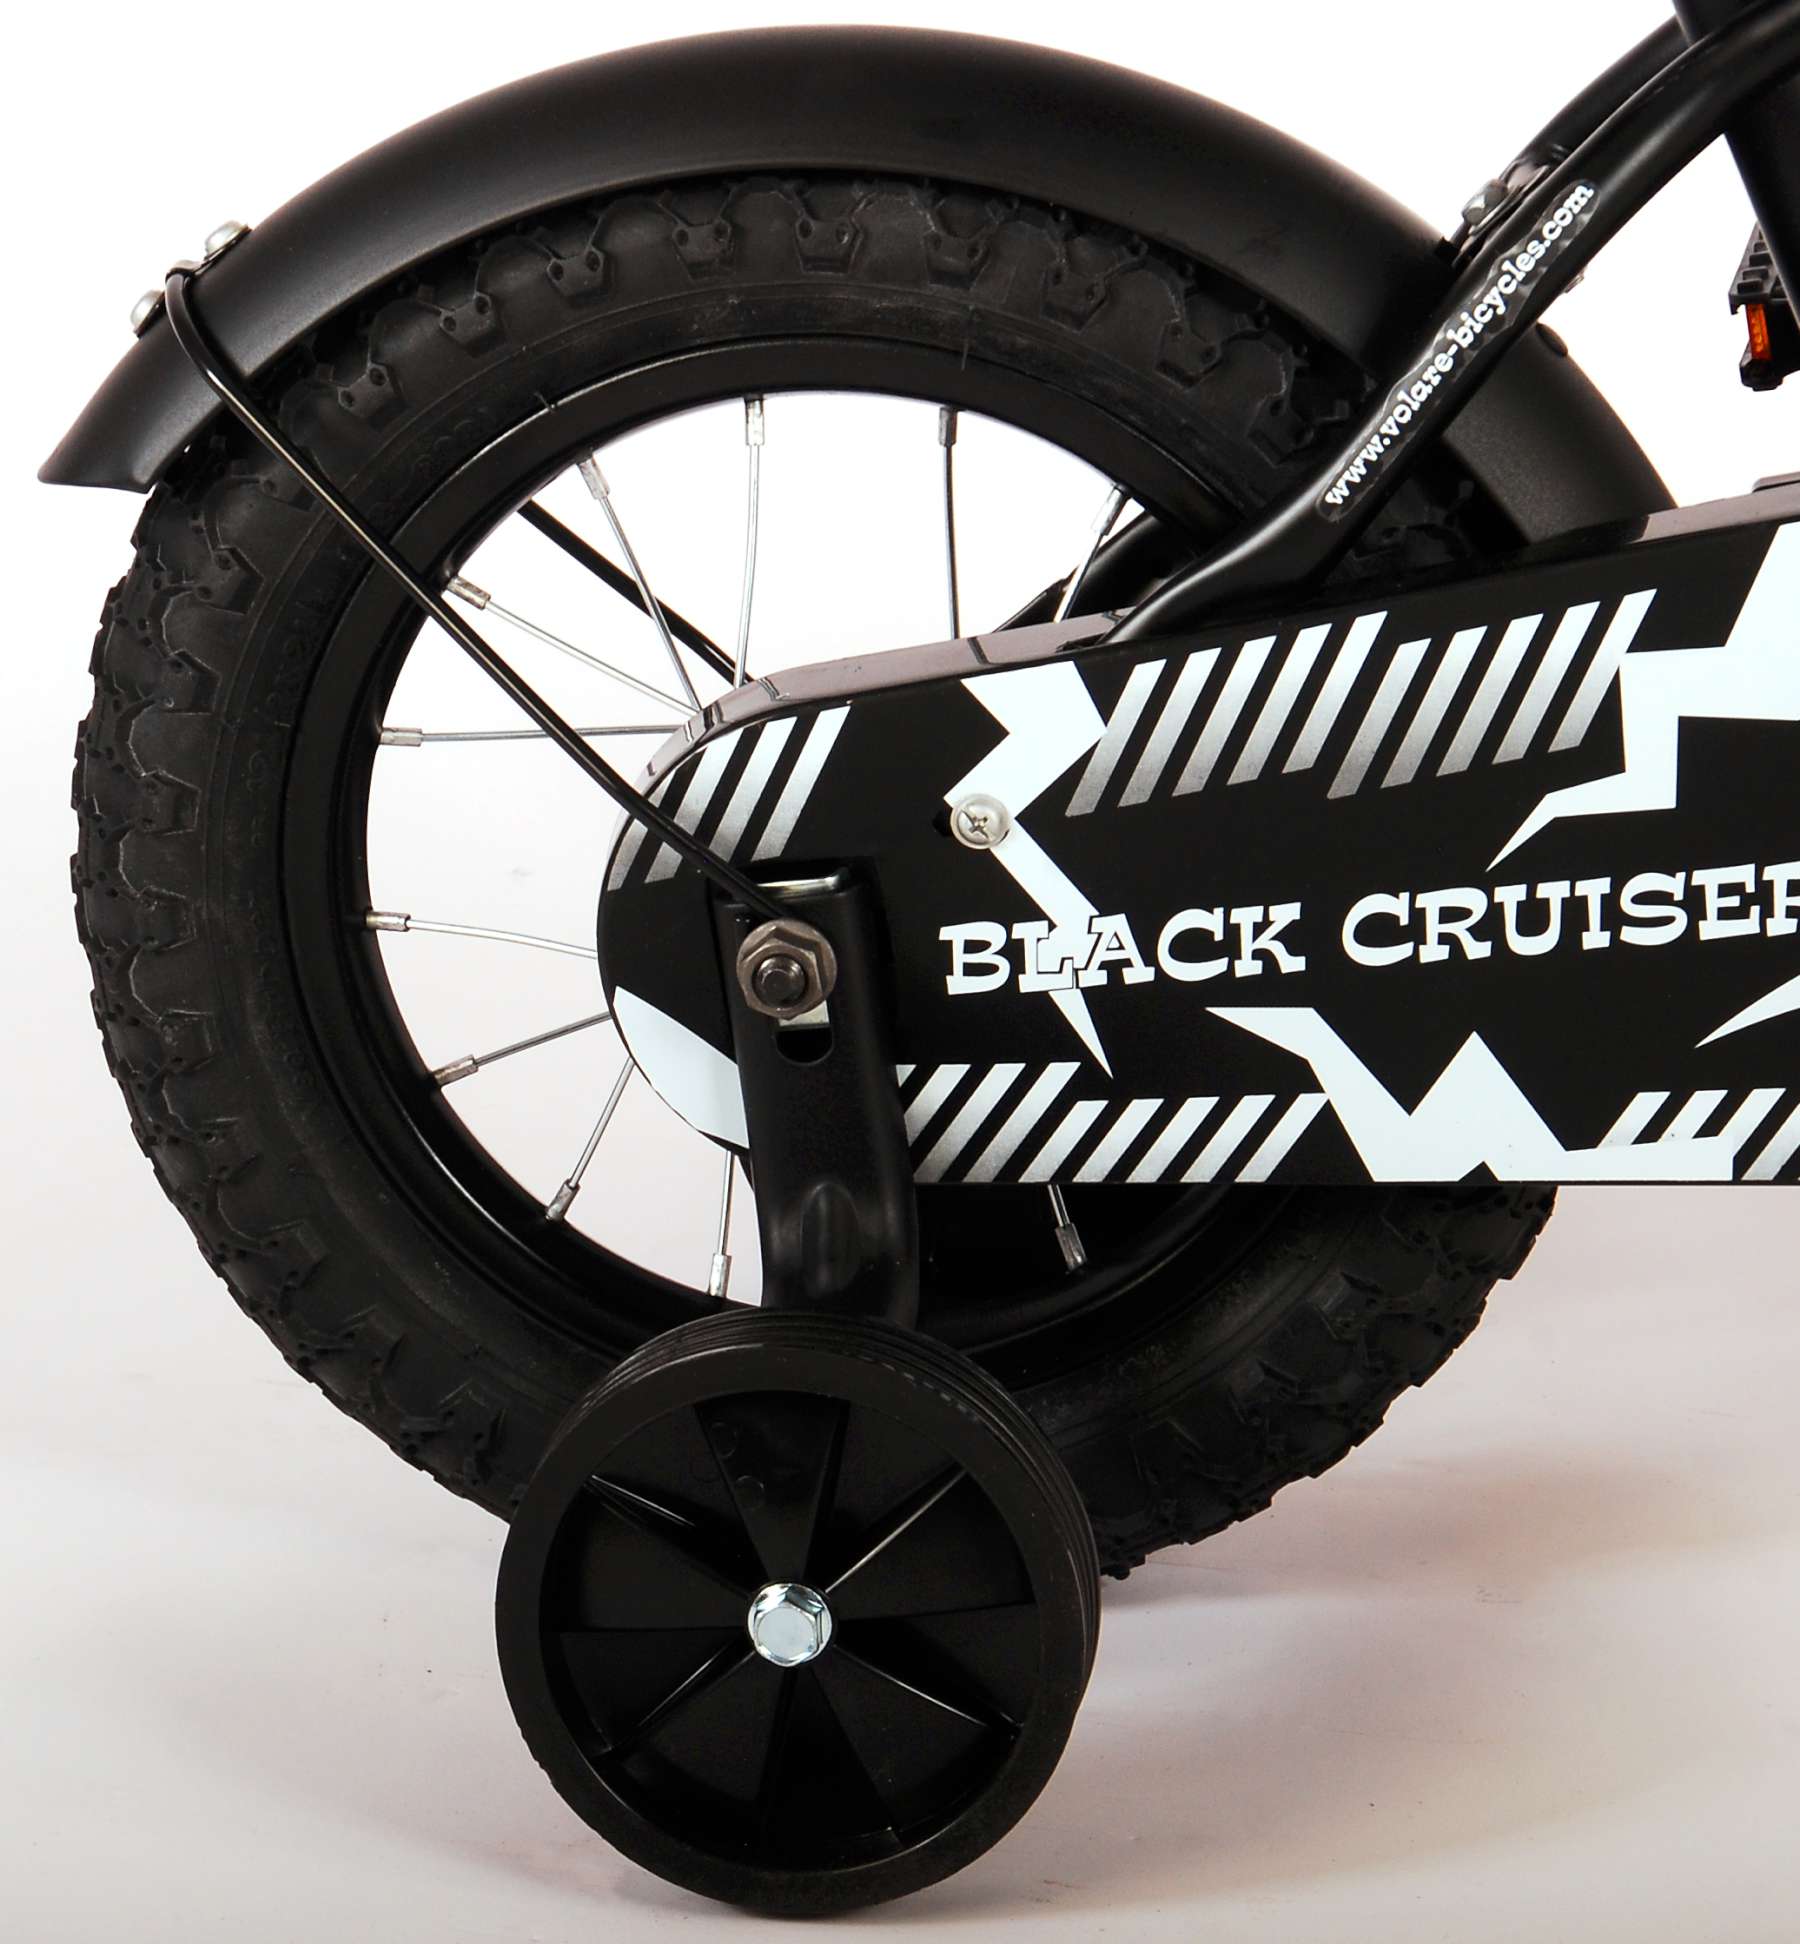 Black_Cruiser_12_inch_-_3-W1800